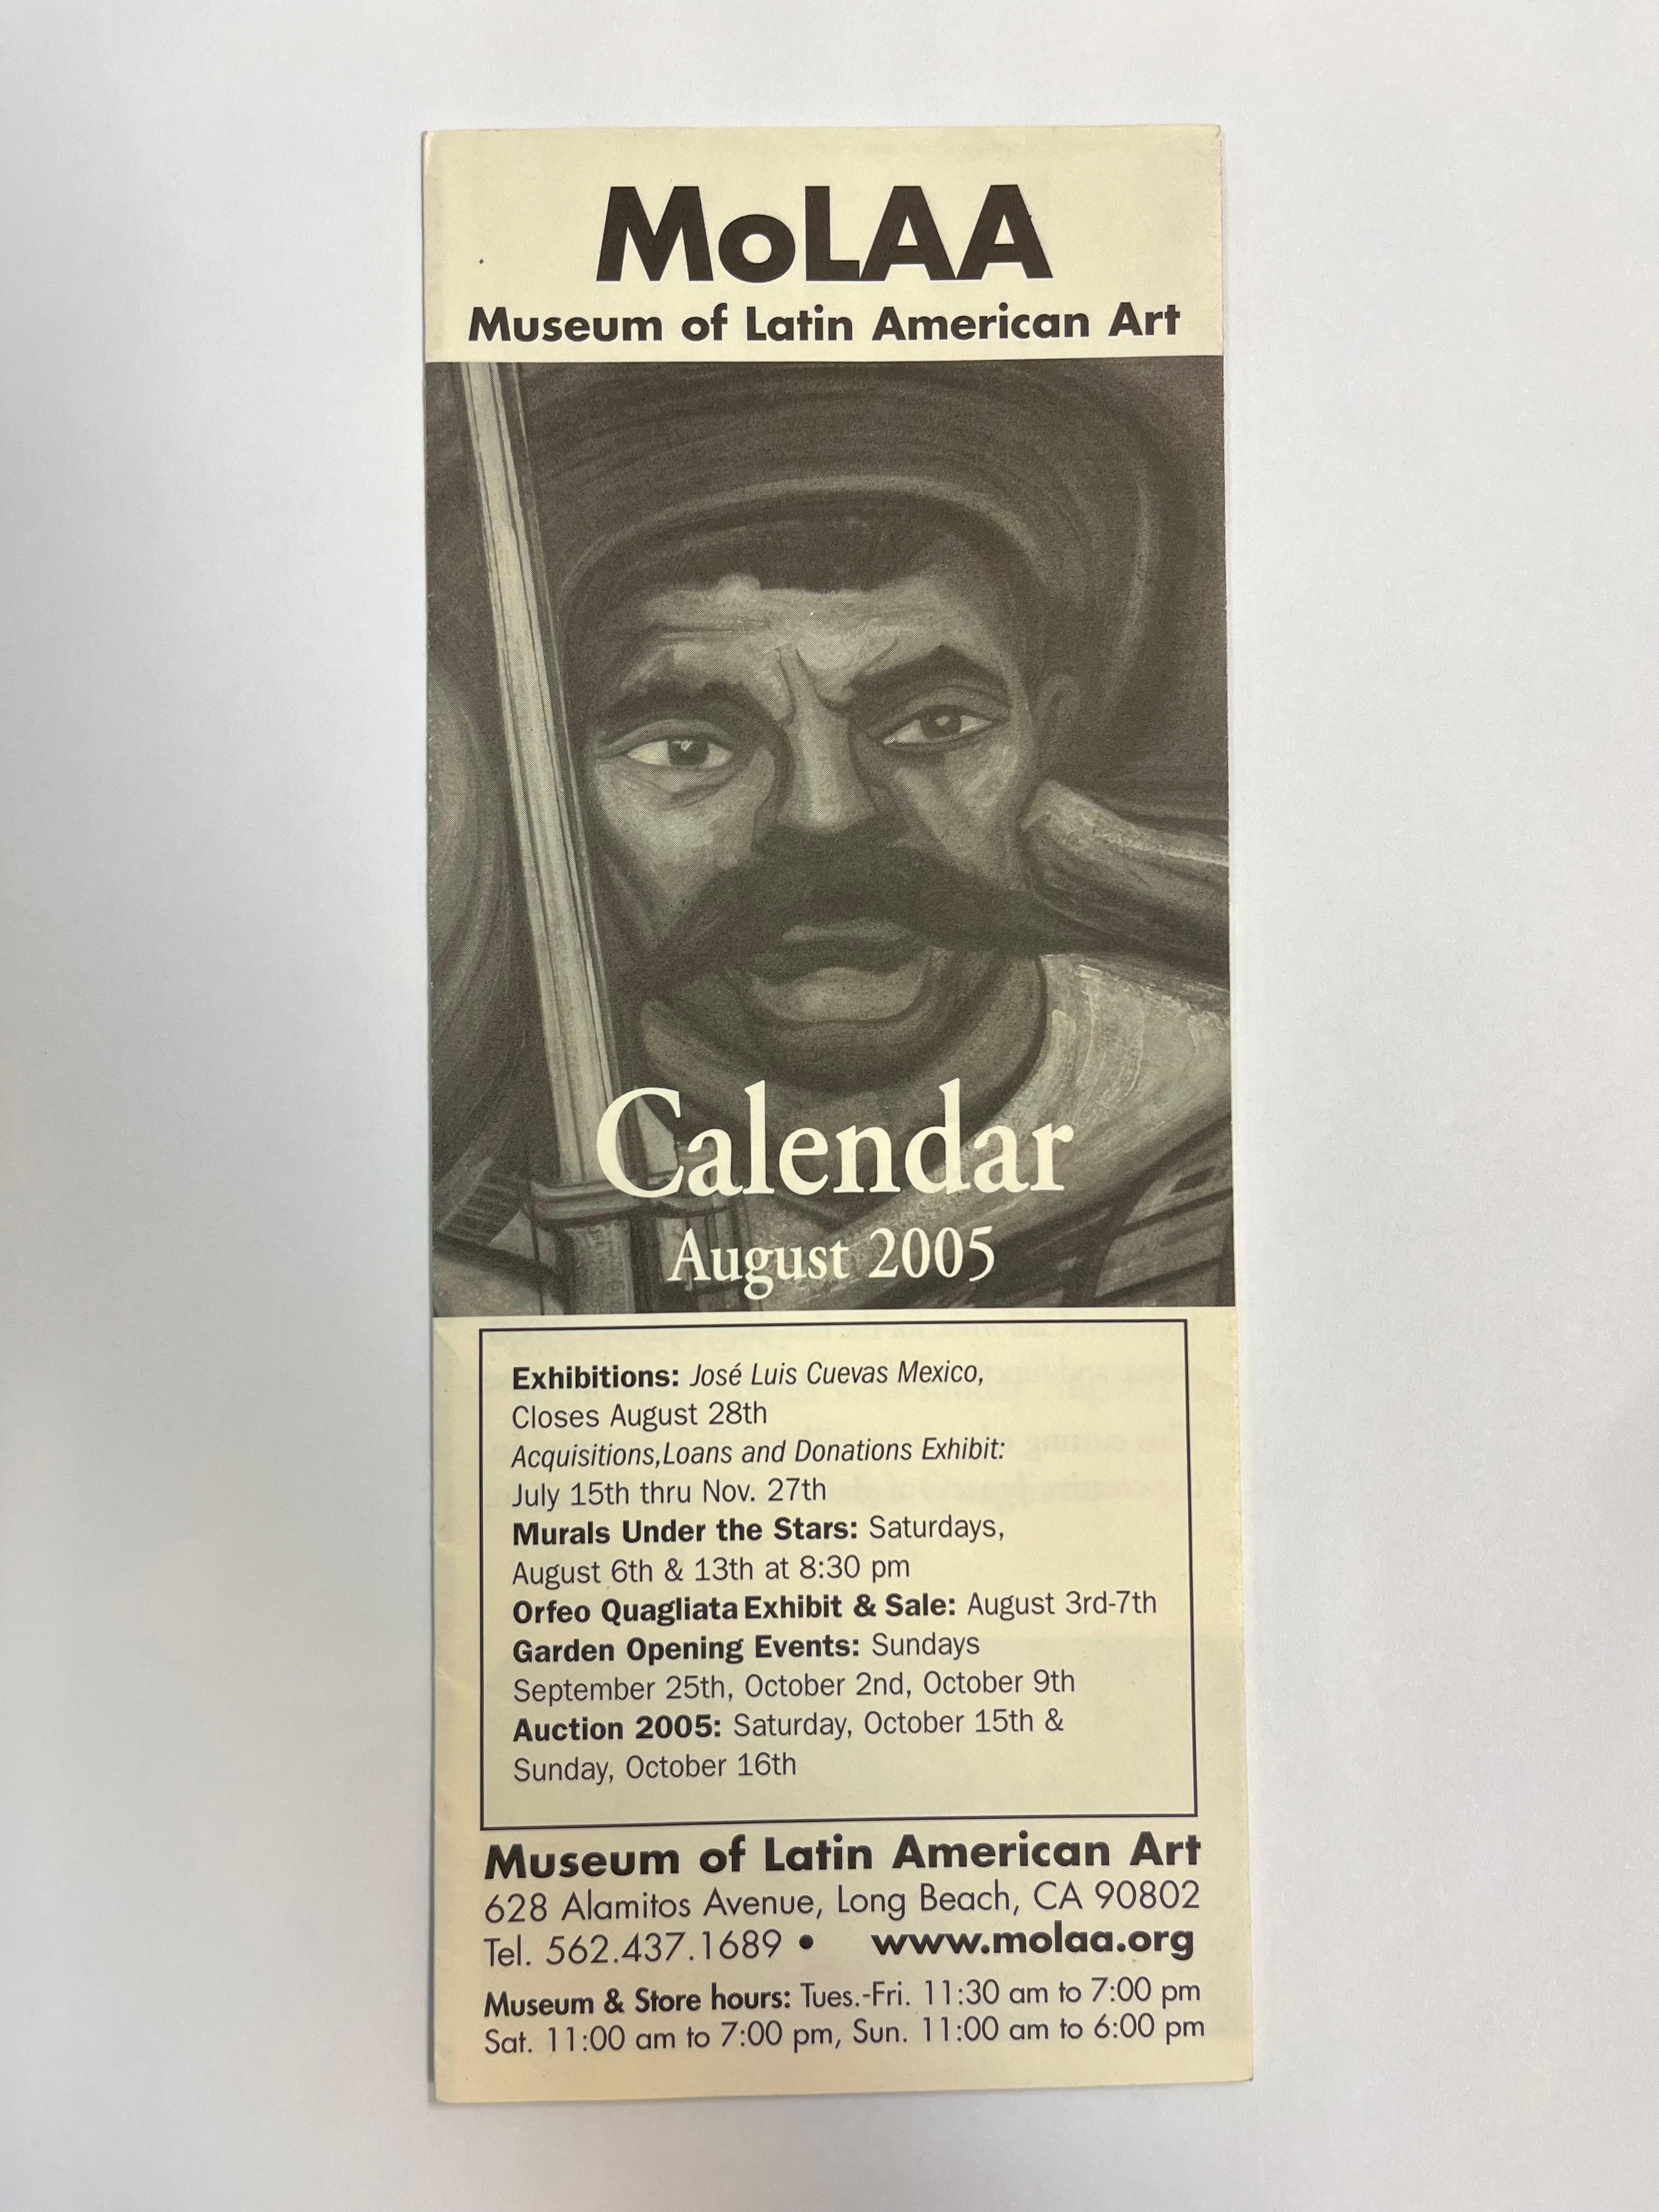 Artistics : David Alfaro Siqueiros (1896-1974) Mexicain
Titre : Emiliano Zapata
Médium : Pyroxyline sur panneau de bois, signé en bas à droite
Taille : Non encadré 35